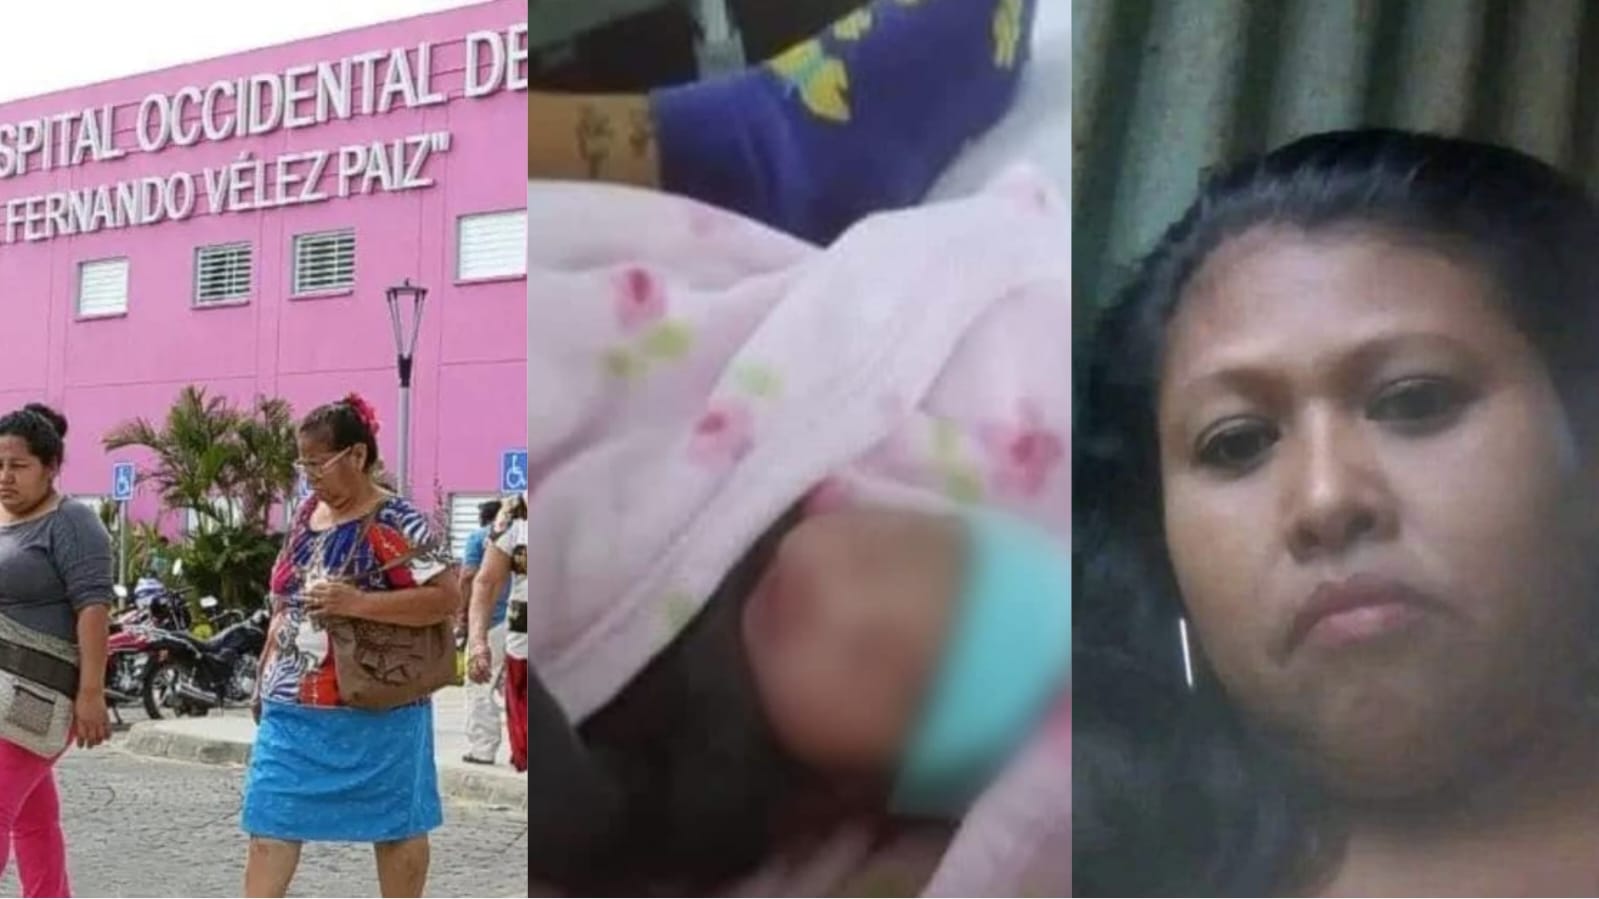 deblegan seguridad hospitales robo bebé masaya nicaragua actual